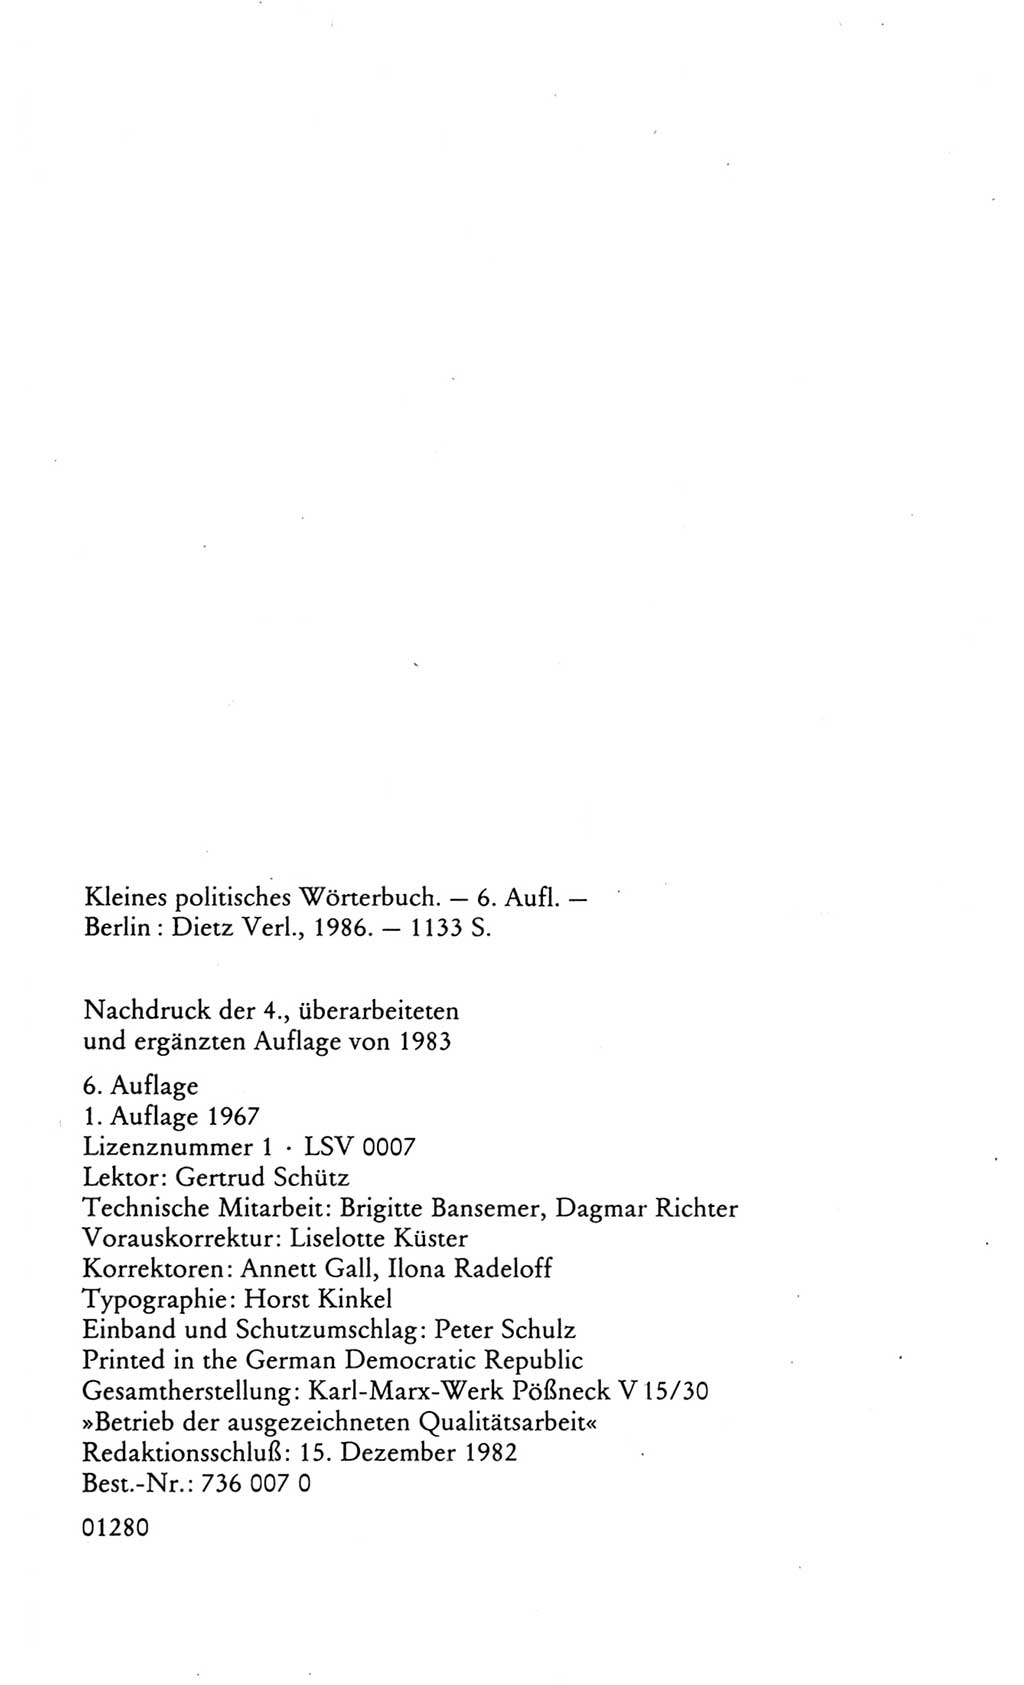 Kleines politisches Wörterbuch [Deutsche Demokratische Republik (DDR)] 1986, Seite 1134 (Kl. pol. Wb. DDR 1986, S. 1134)